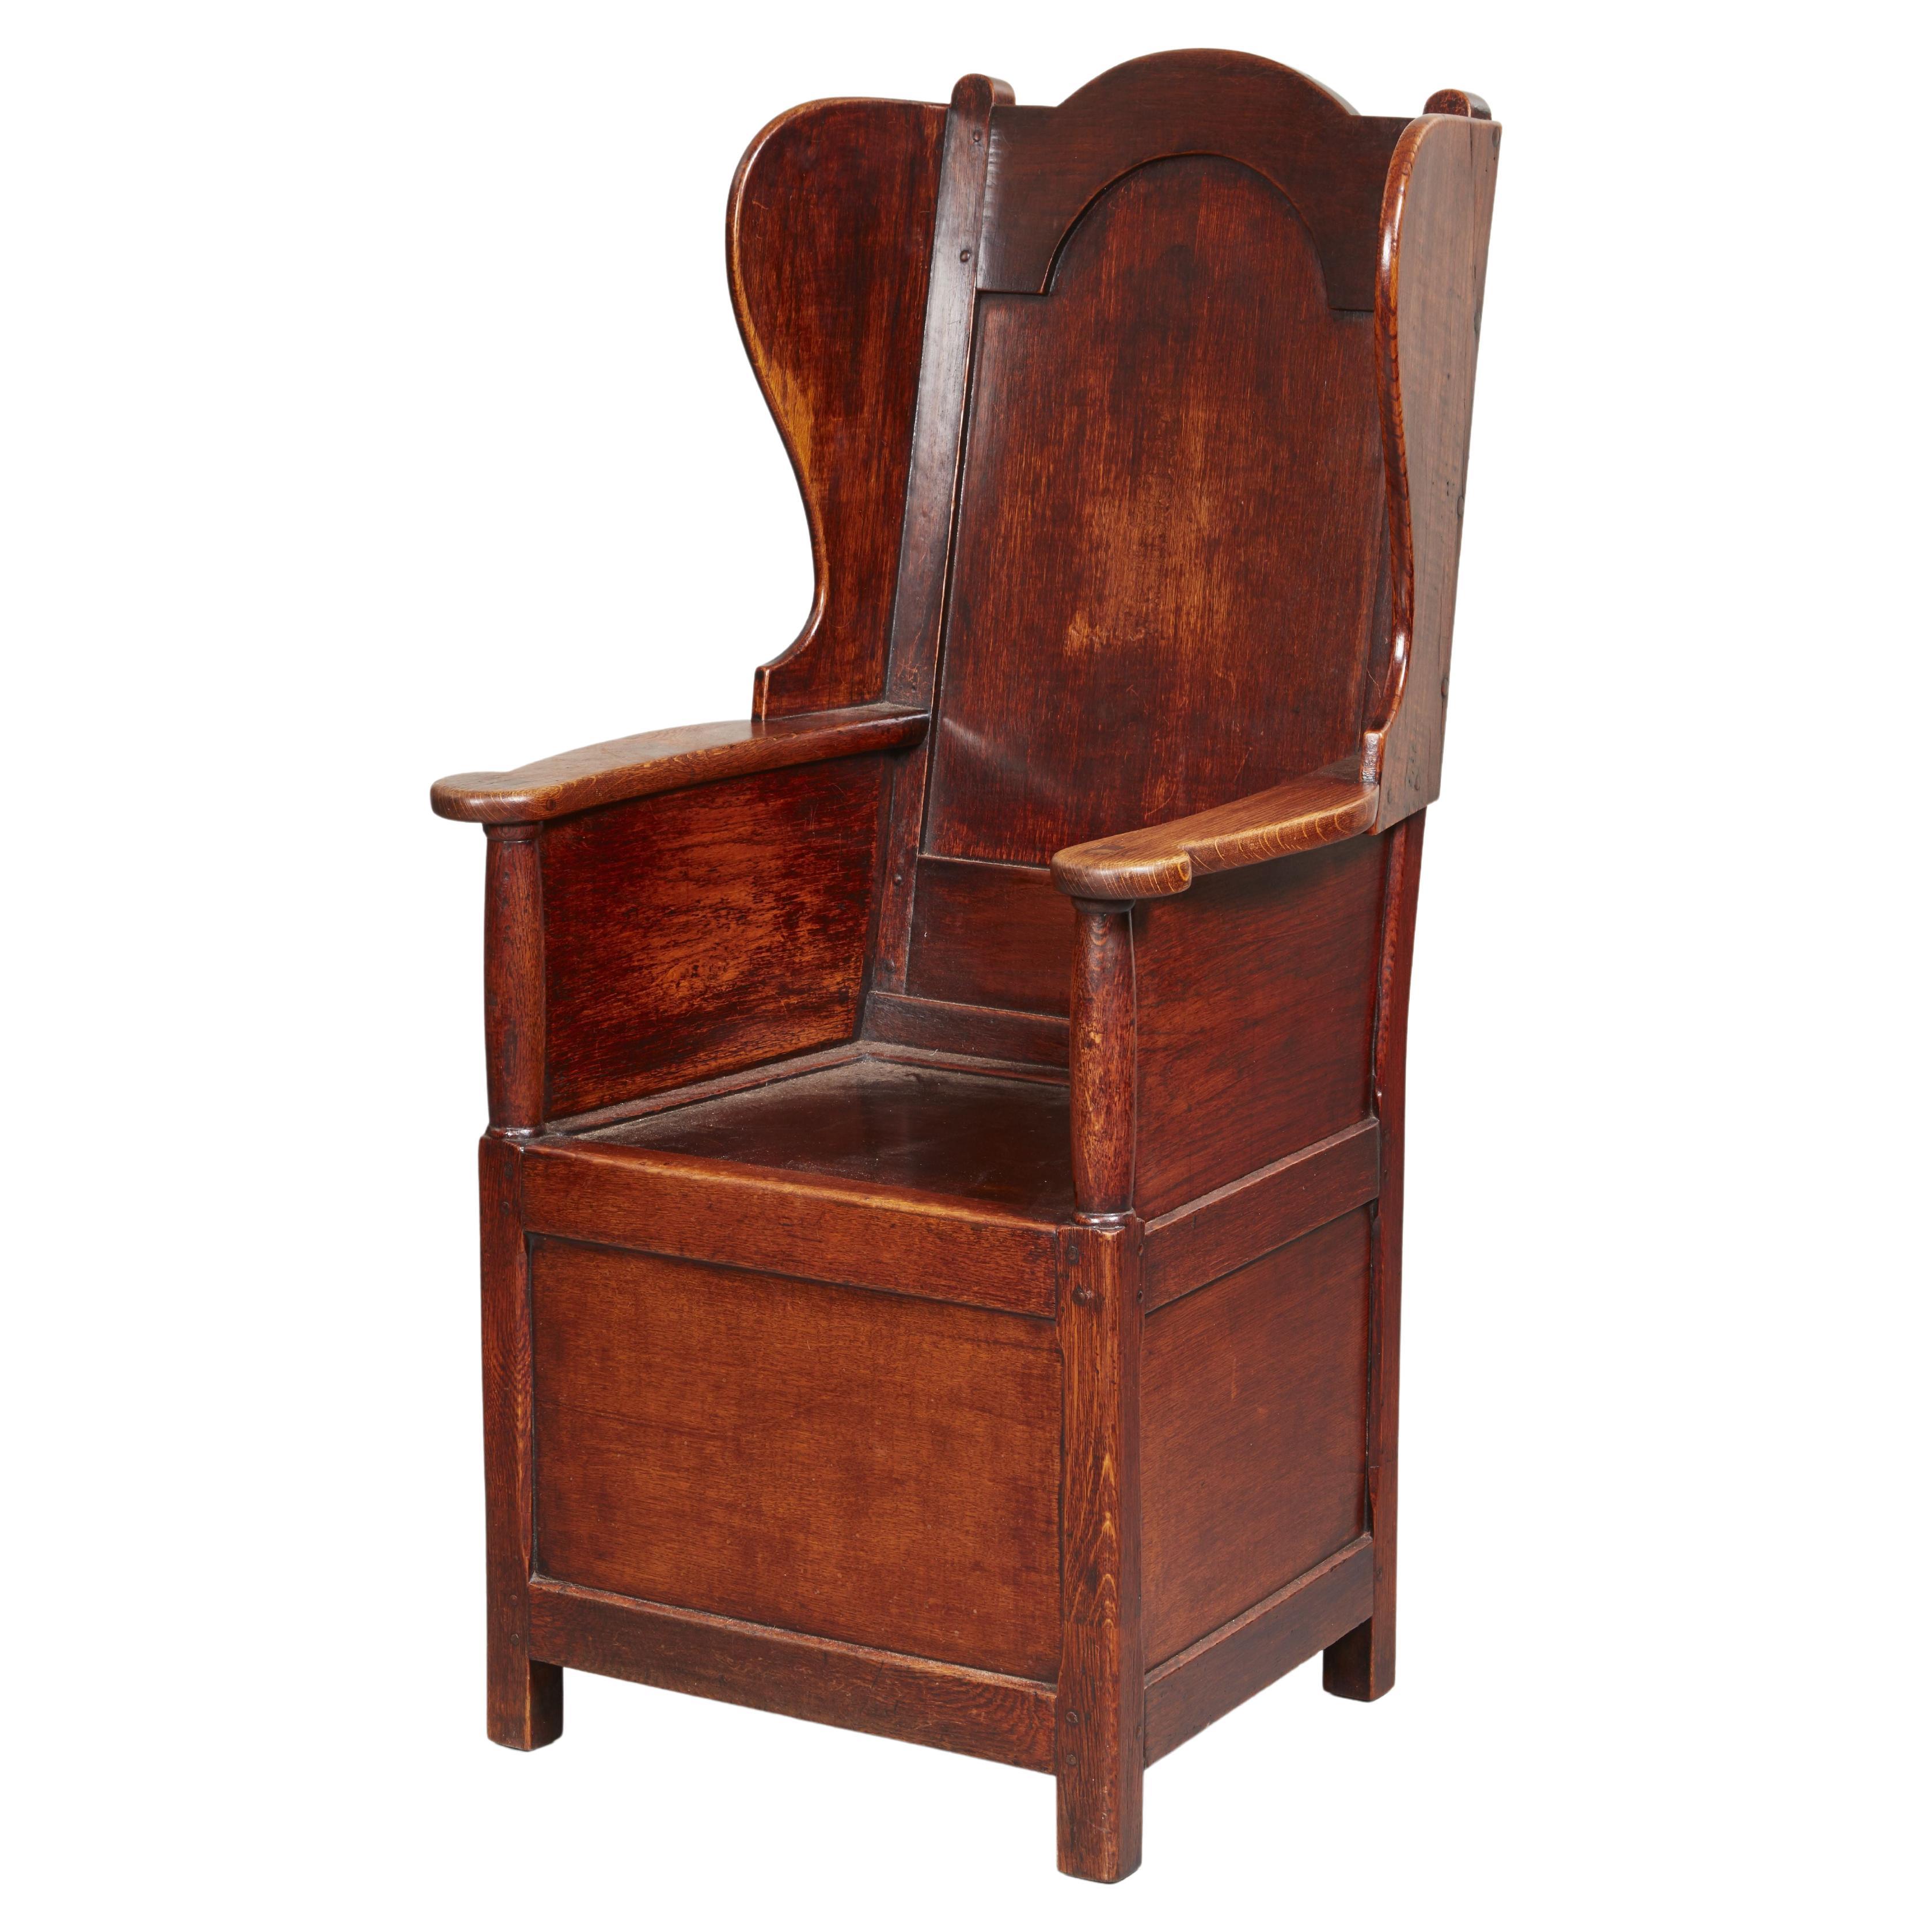 Early 19th c. Welsh Oak Lambing Chair